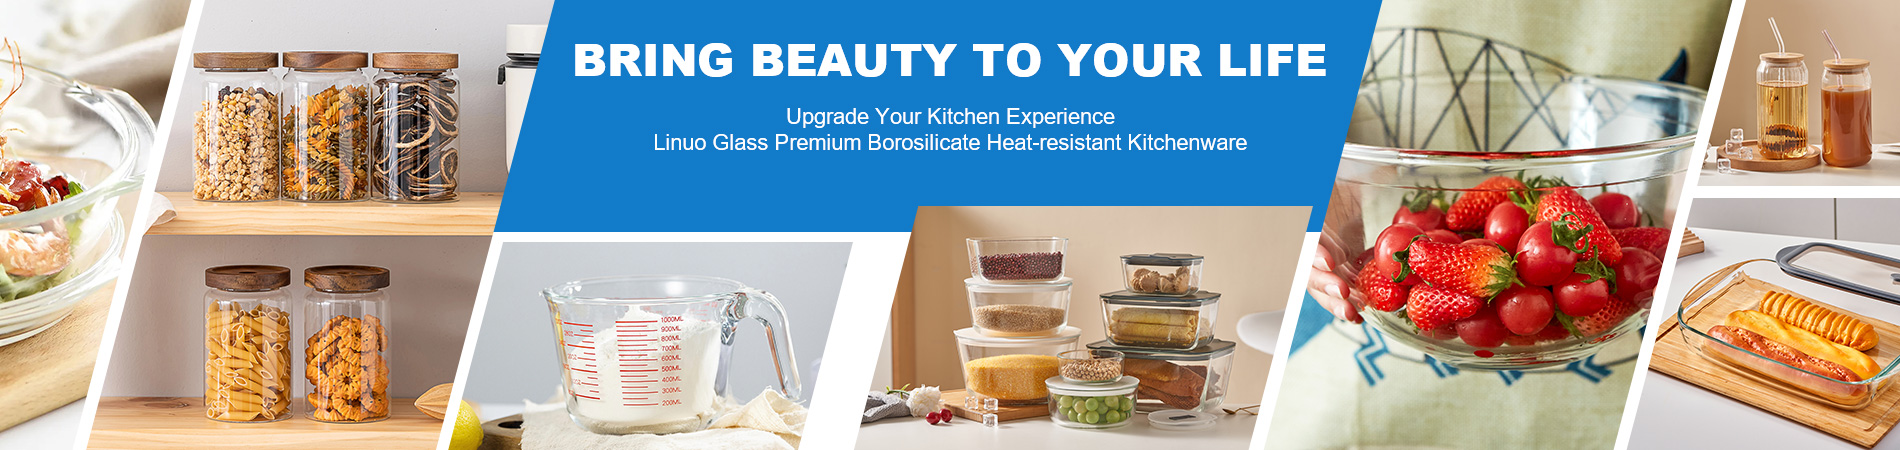 Ustensiles de cuisine Linuo Glass Premium Borosilicate résistant à la chaleur